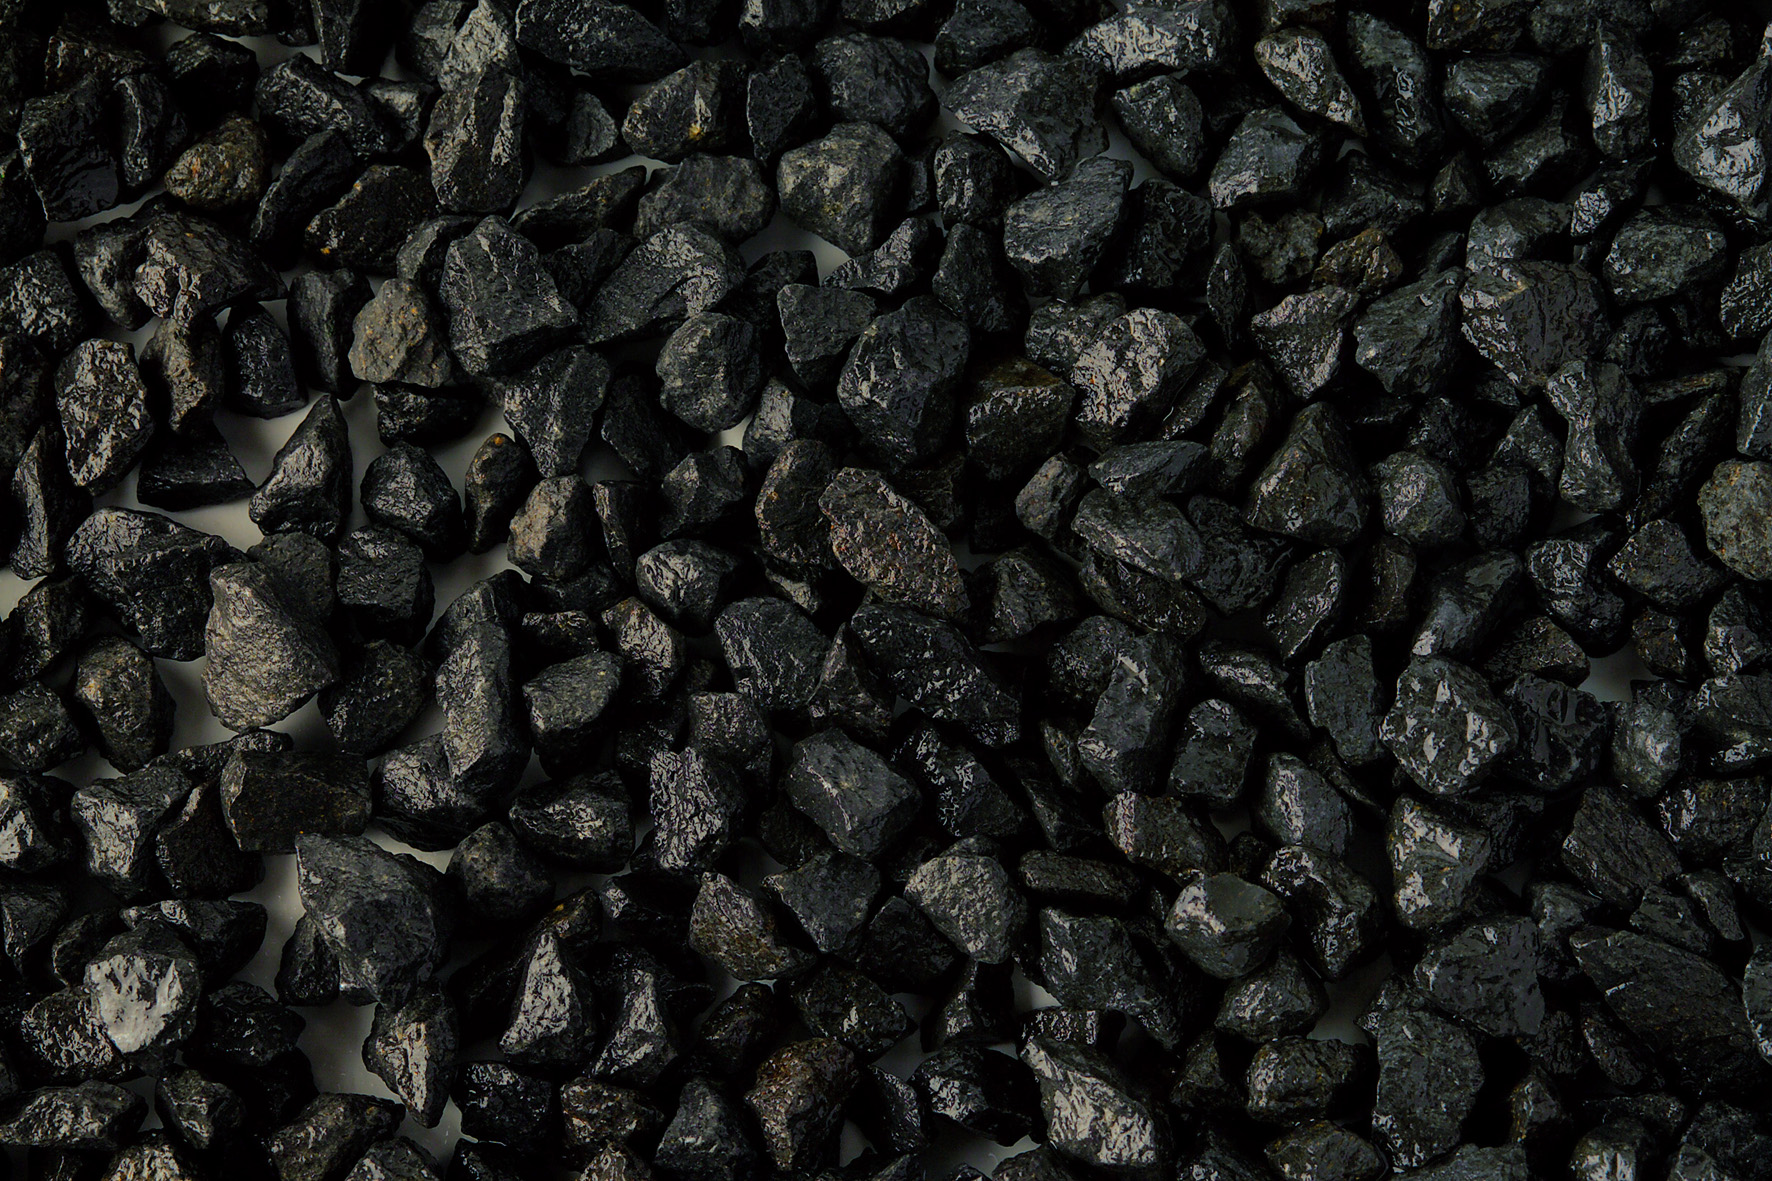 Мульча черный Кристалл вулканический туф 5-10 мм 5 кг.